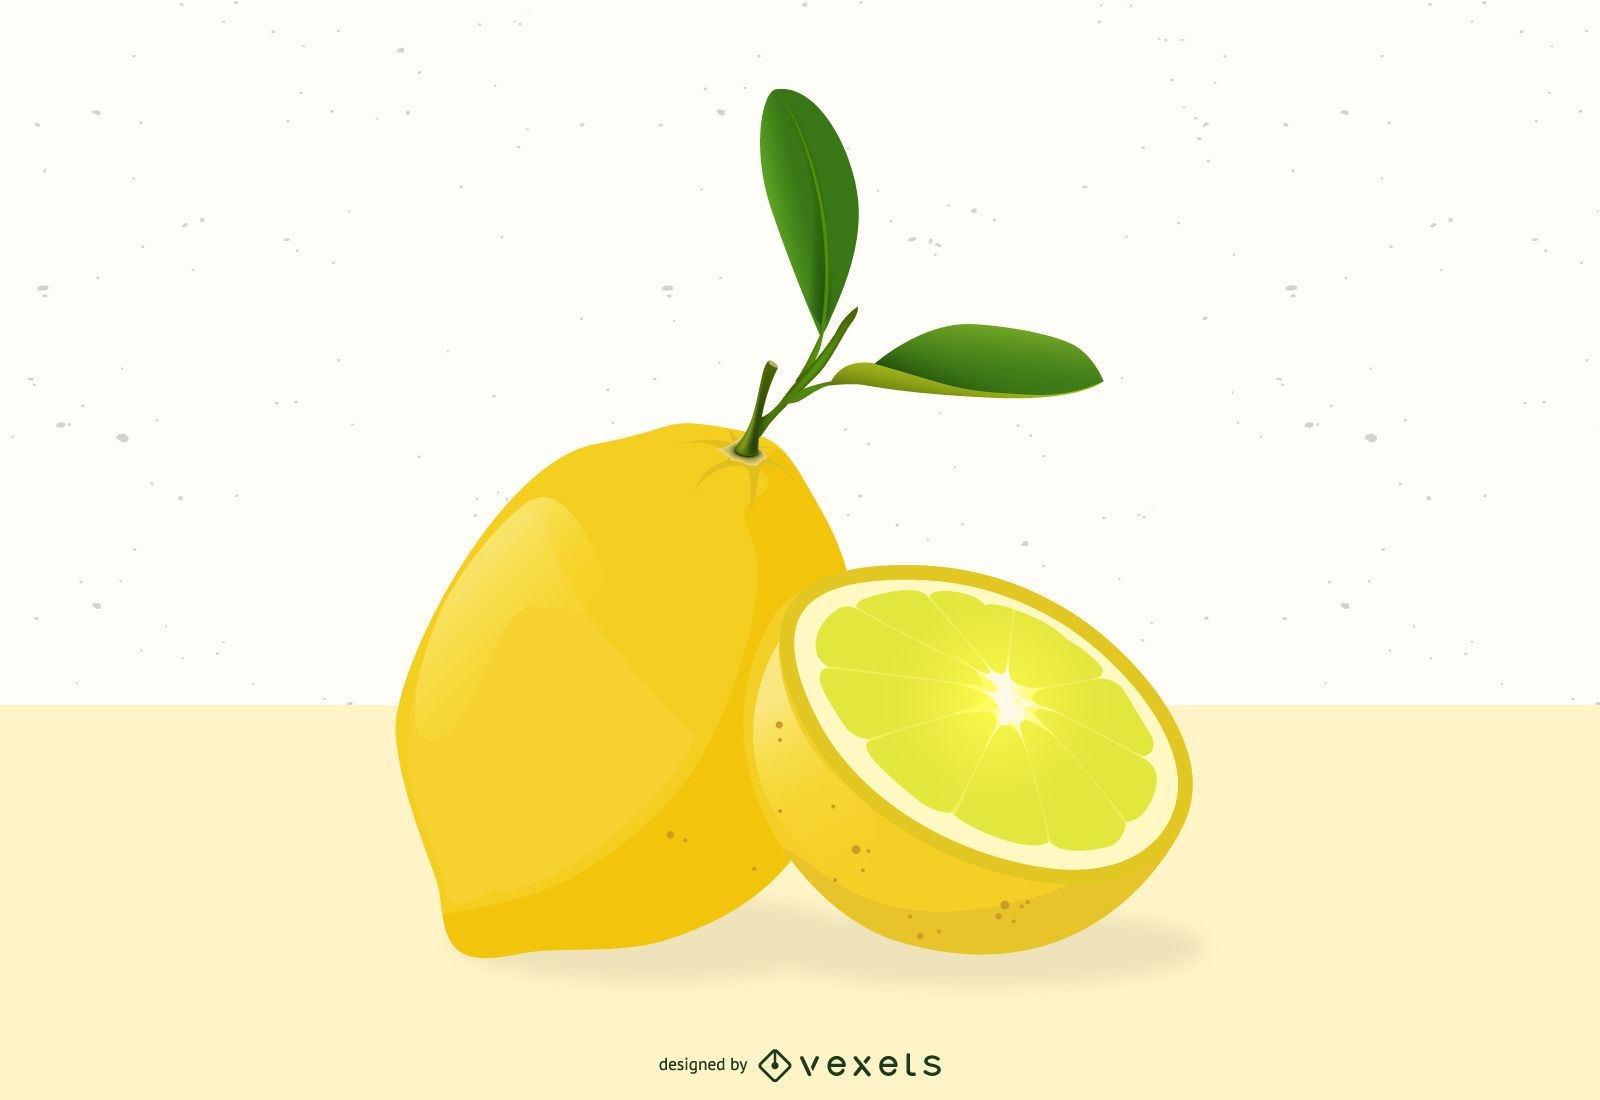 Lemon fruit illustration